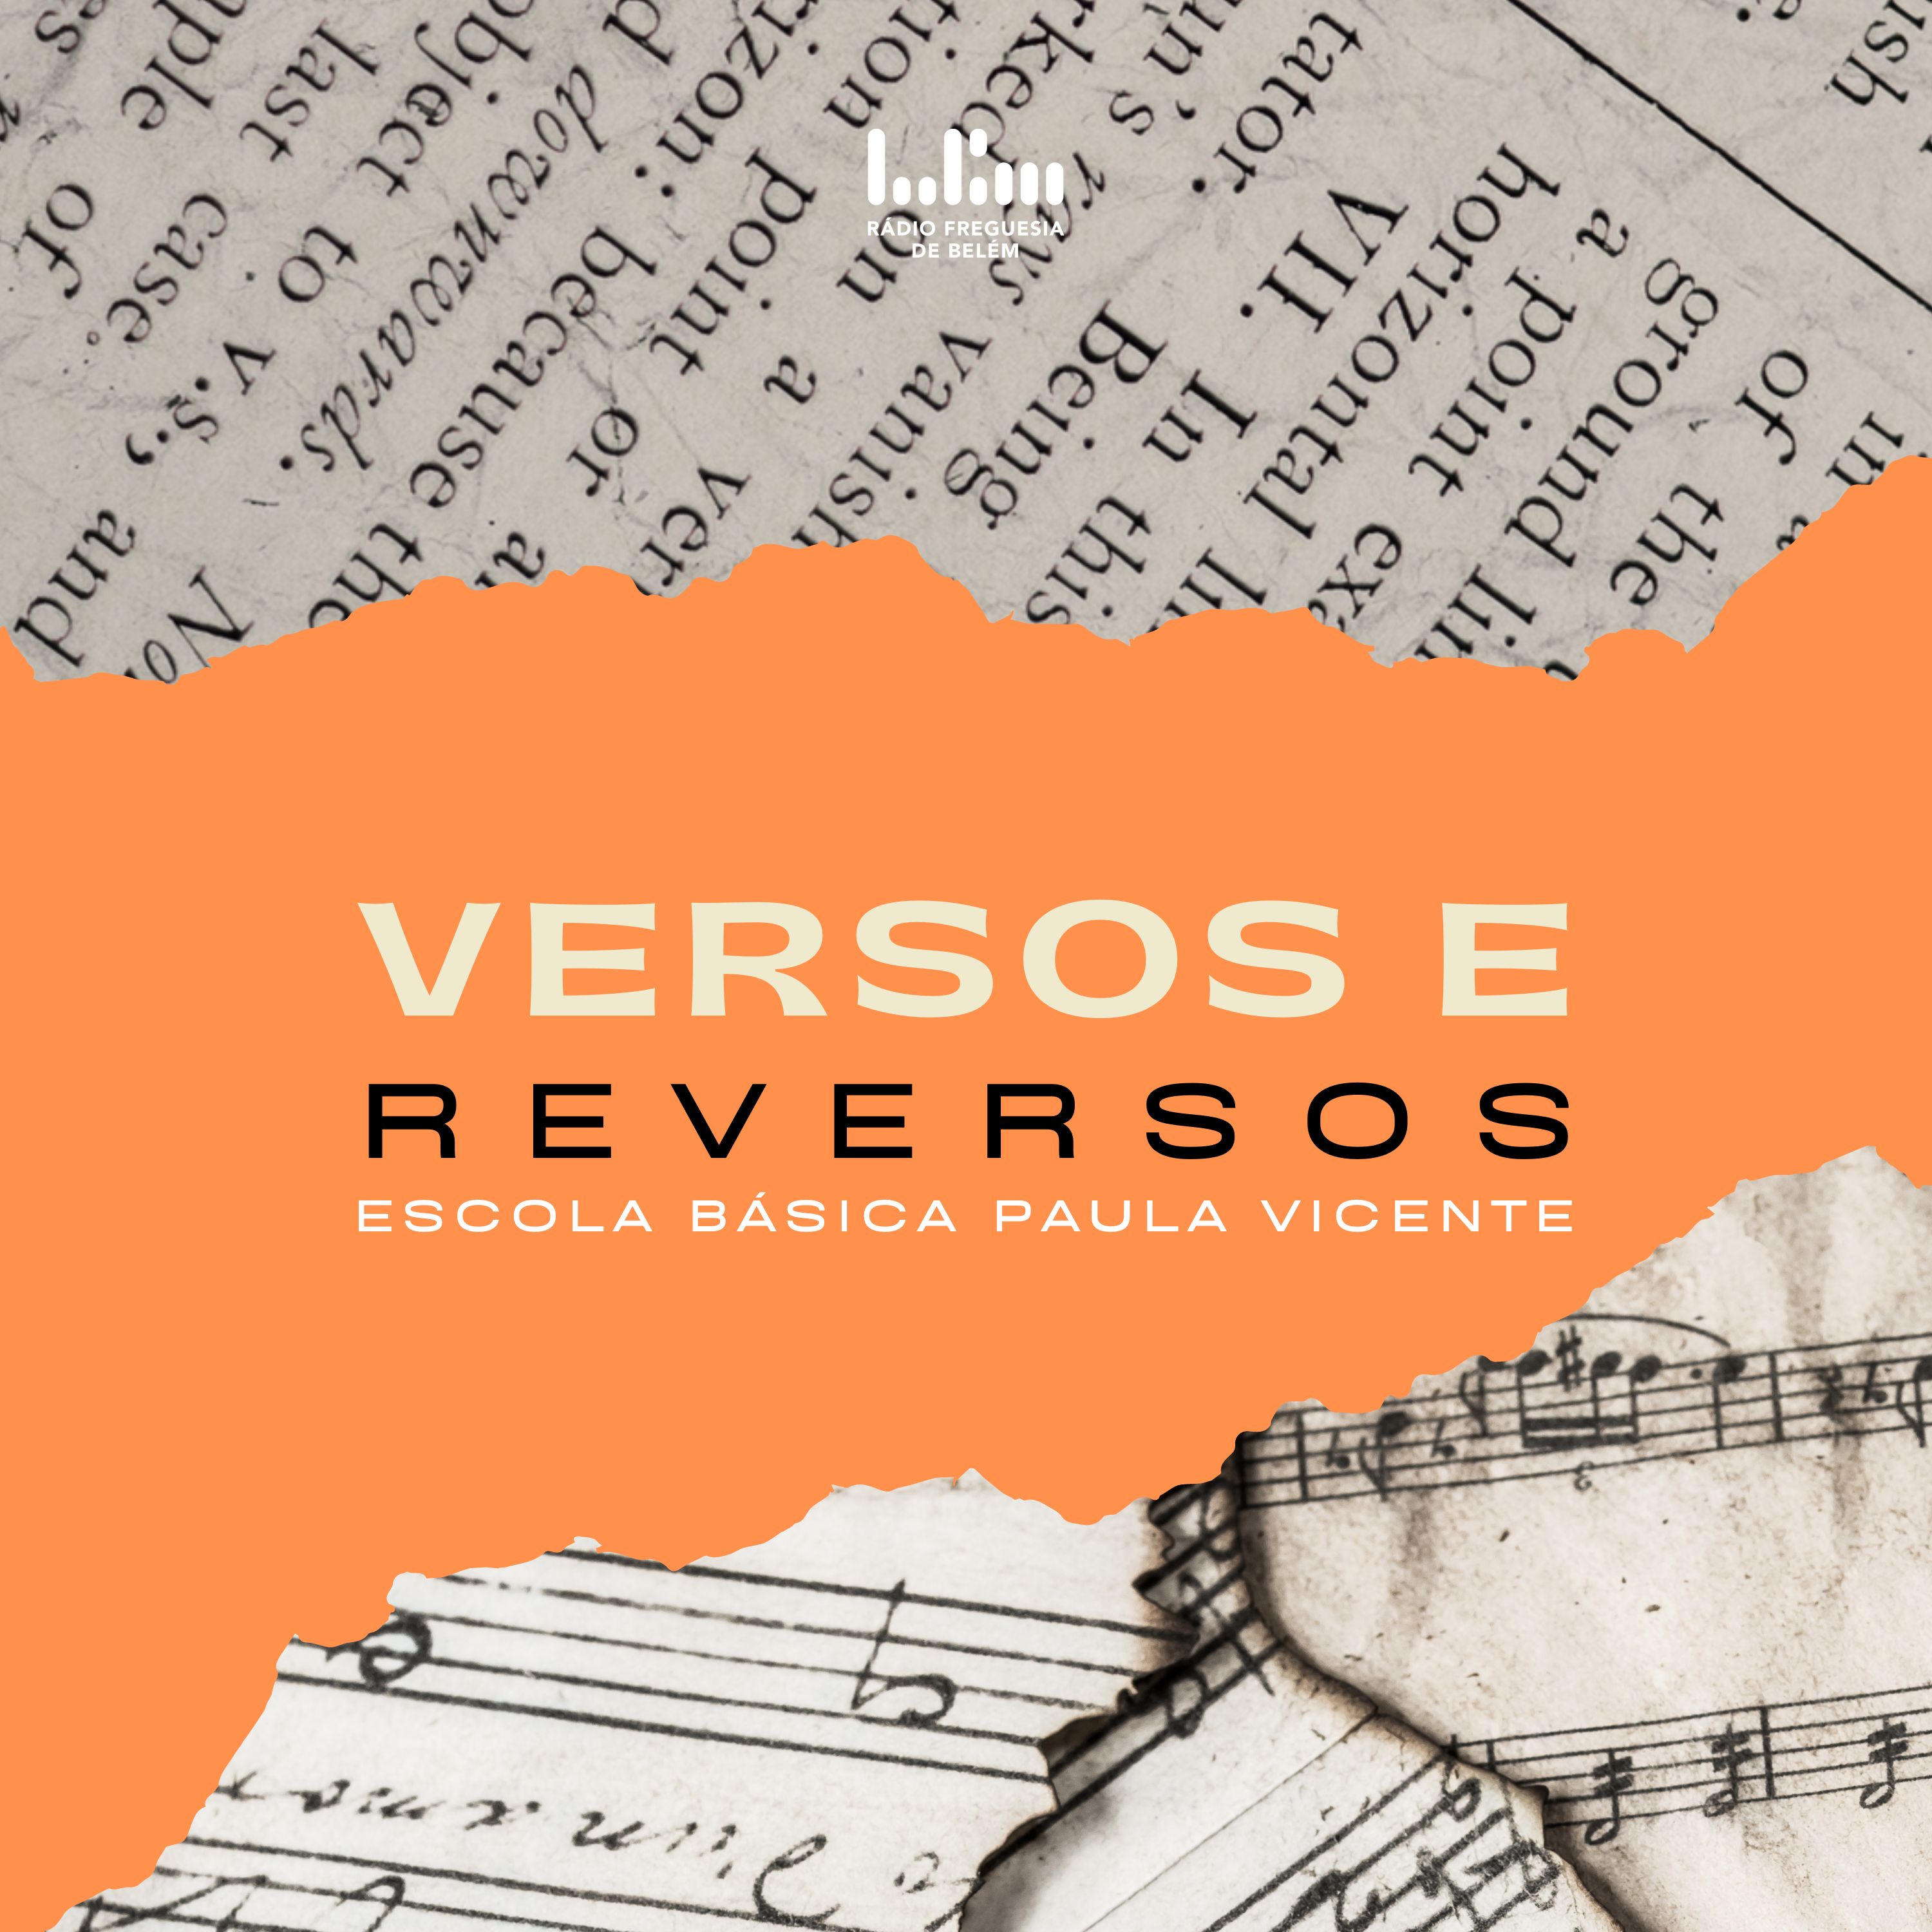 Versos e reversos - Rádio Freguesia de Belém